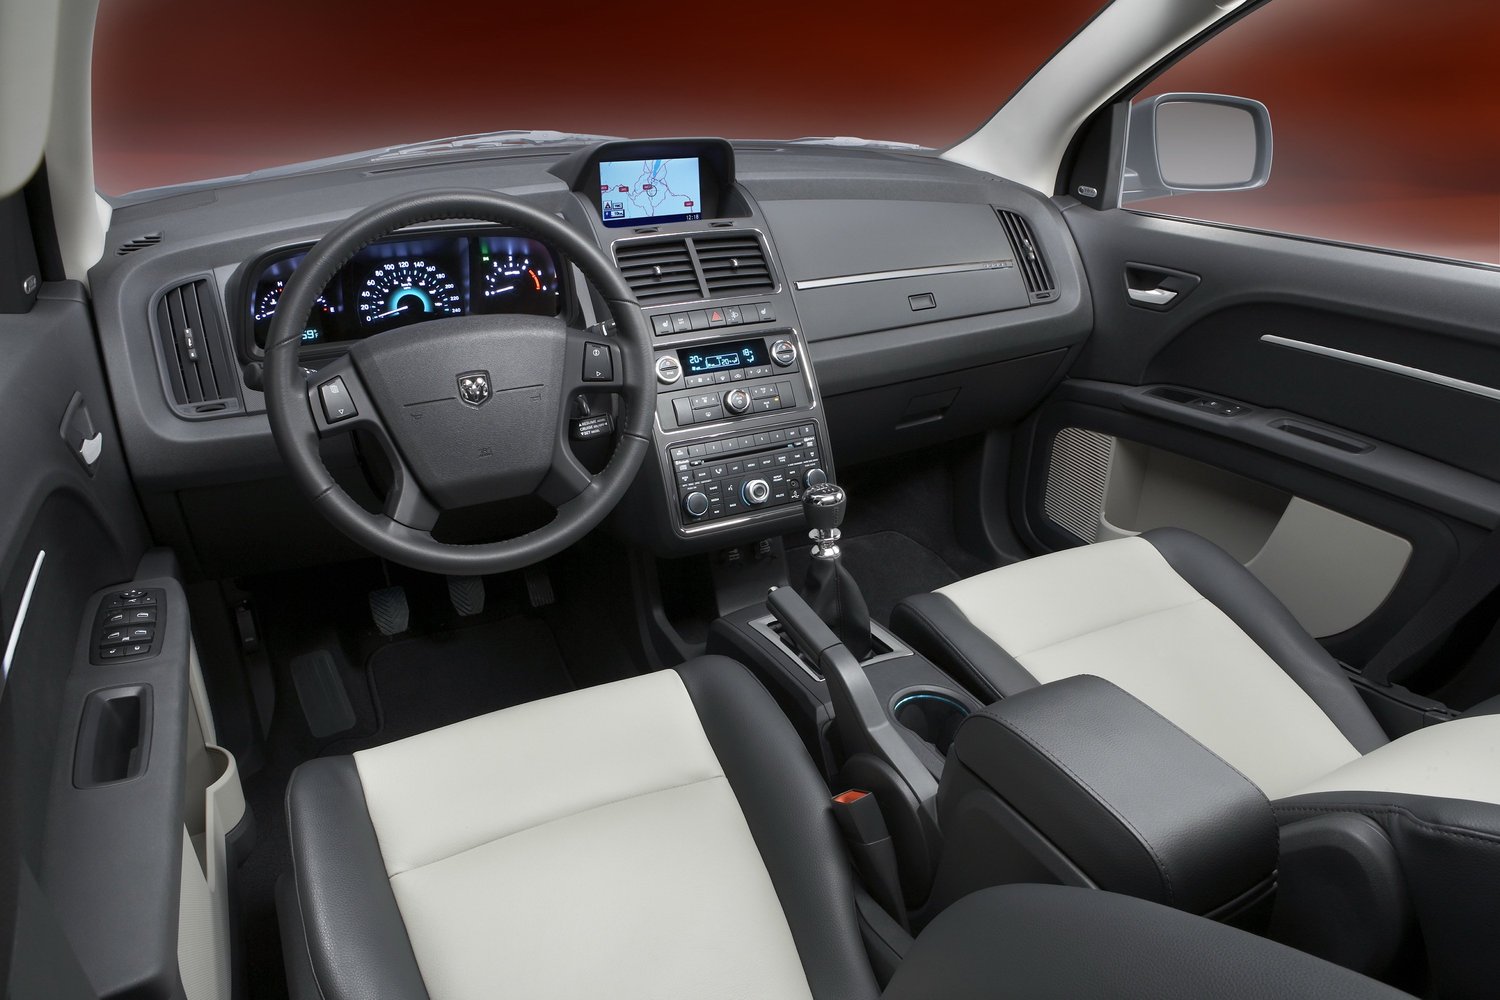 кроссовер Dodge Journey 2008 - 2016г выпуска модификация 2.0 AT (140 л.с.)